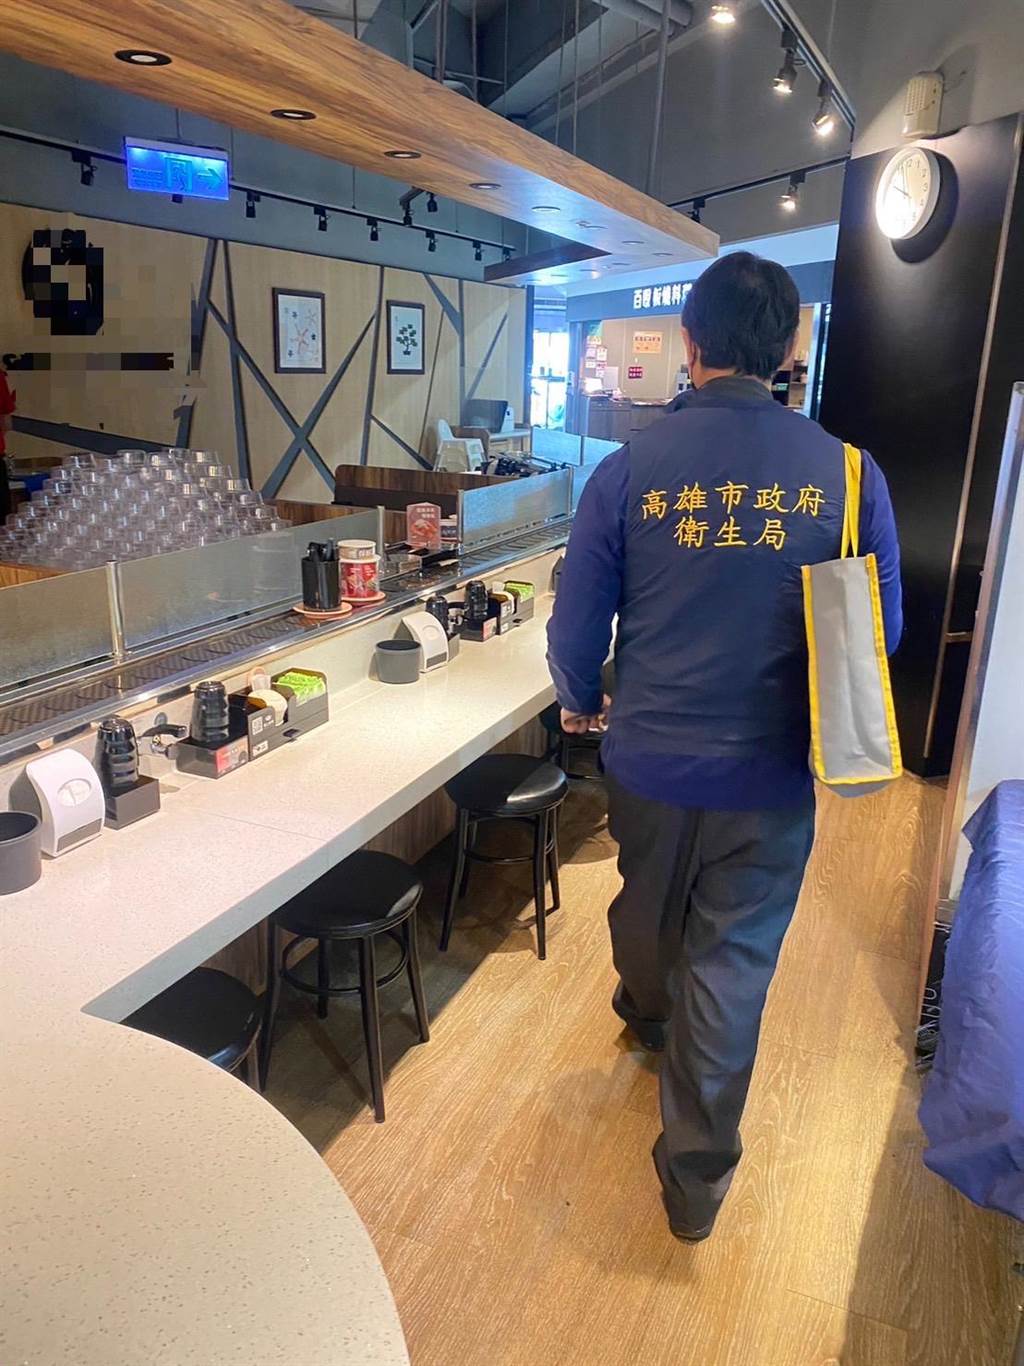 高雄市卫生局派人到涉事寿司店察看。图自台湾中时新闻网